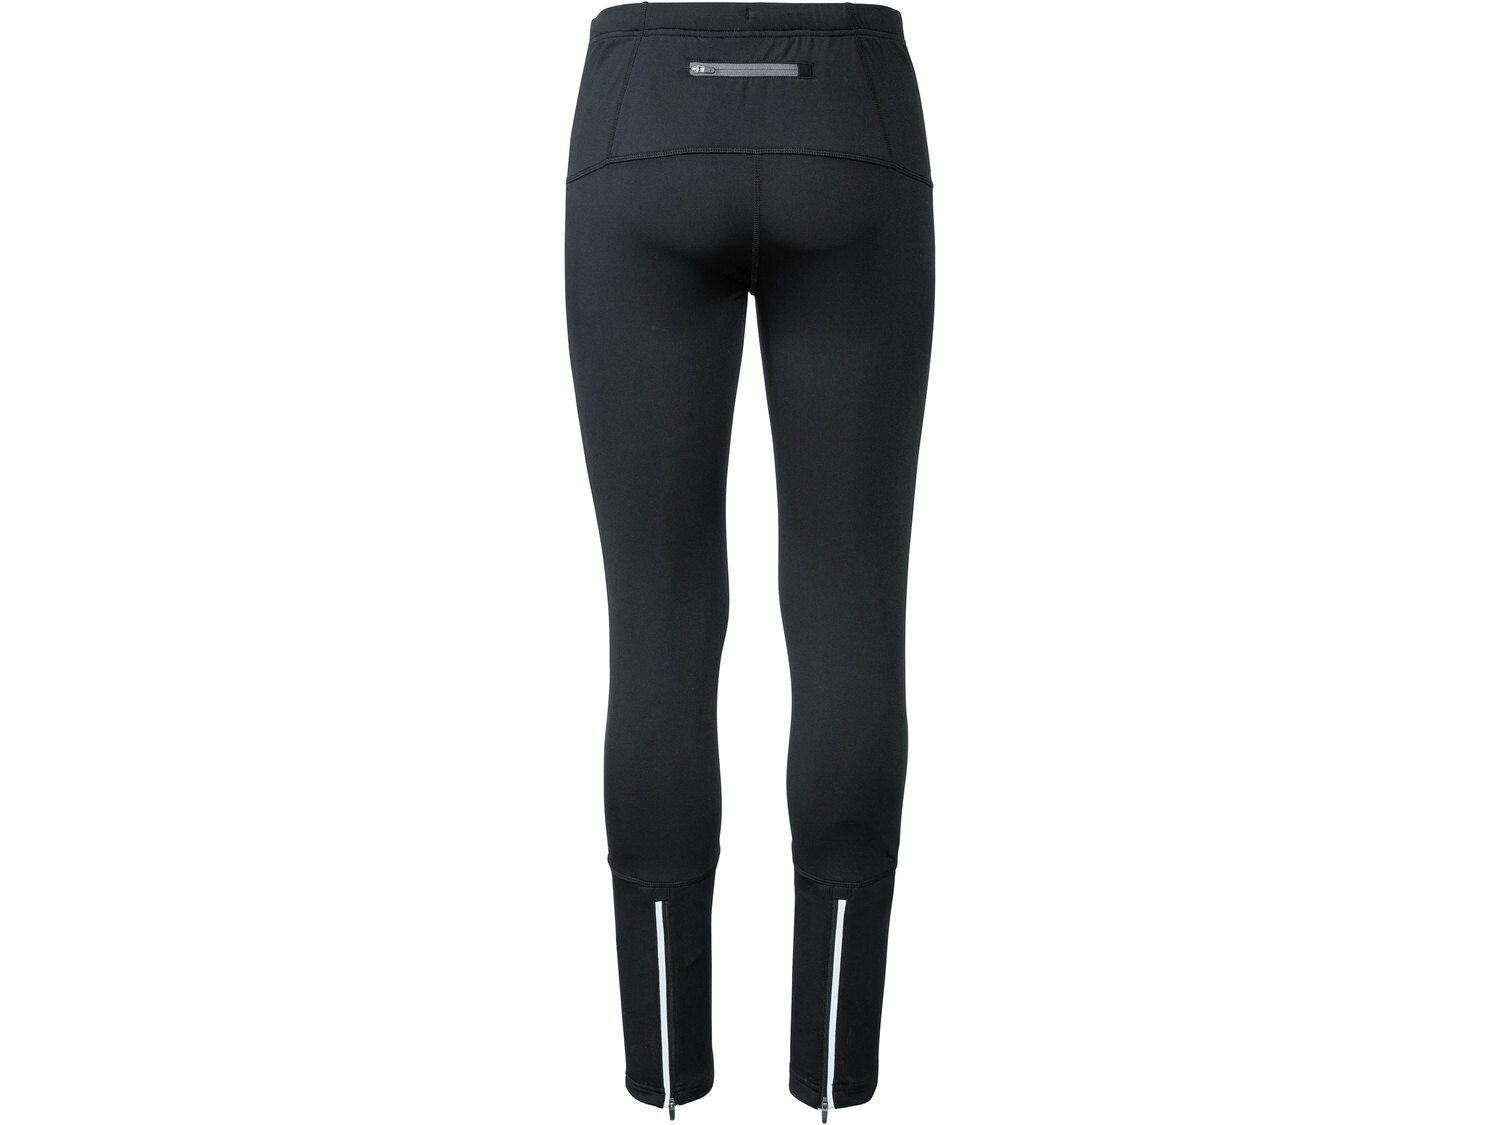 Funkcyjne spodnie softshell Crivit, cena 37,99 PLN 
męskie 
- rozmiary: XS-L*
- ...